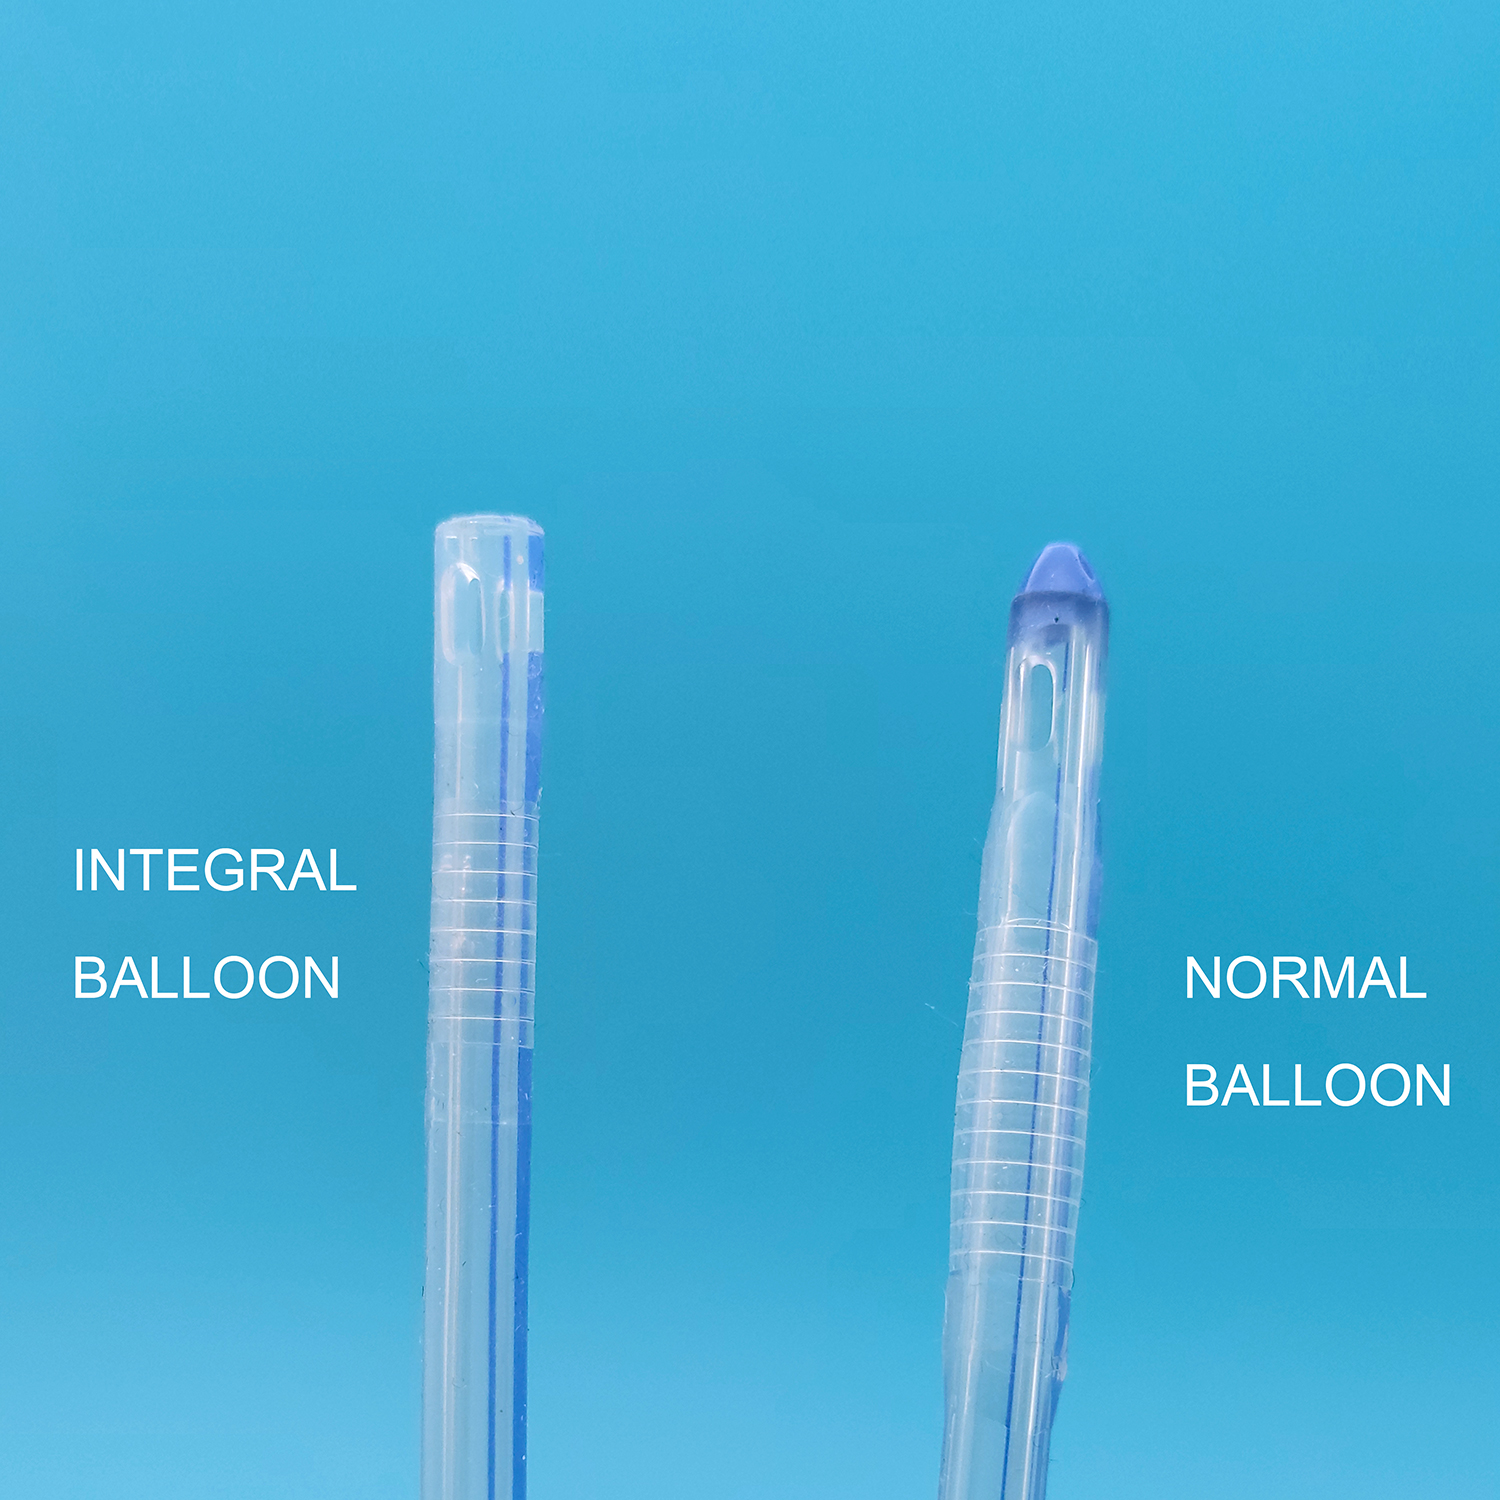 2 Way Mai Fassara ko Blue Silicone Foley Catheter tare da Unibal Integral Balloon Fasaha Haɗaɗɗen Flat Balloon Tsakiya Buɗaɗɗen Amfani da Suprapubic